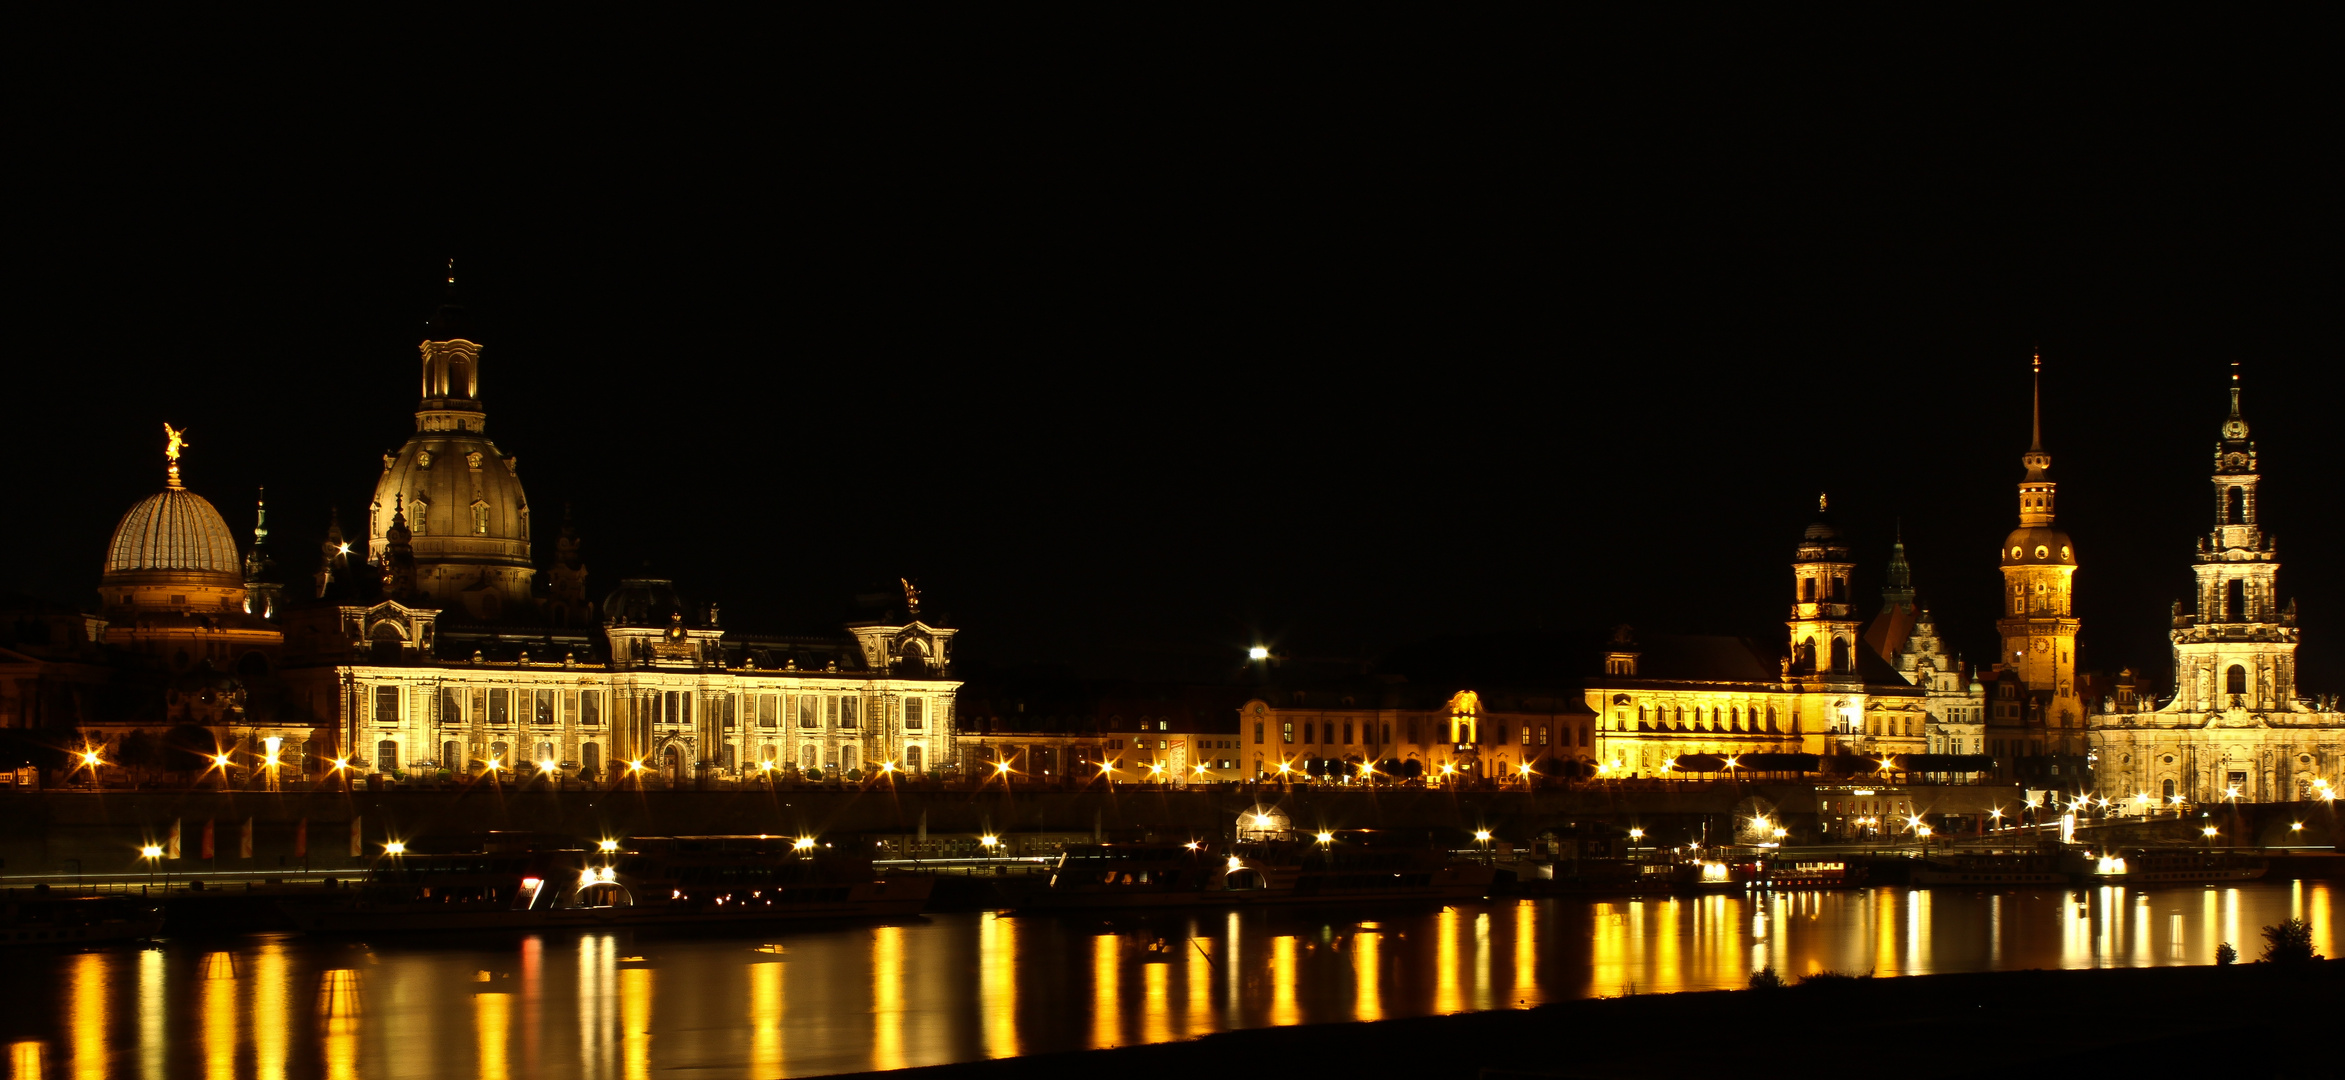 nightskyline von Dresden